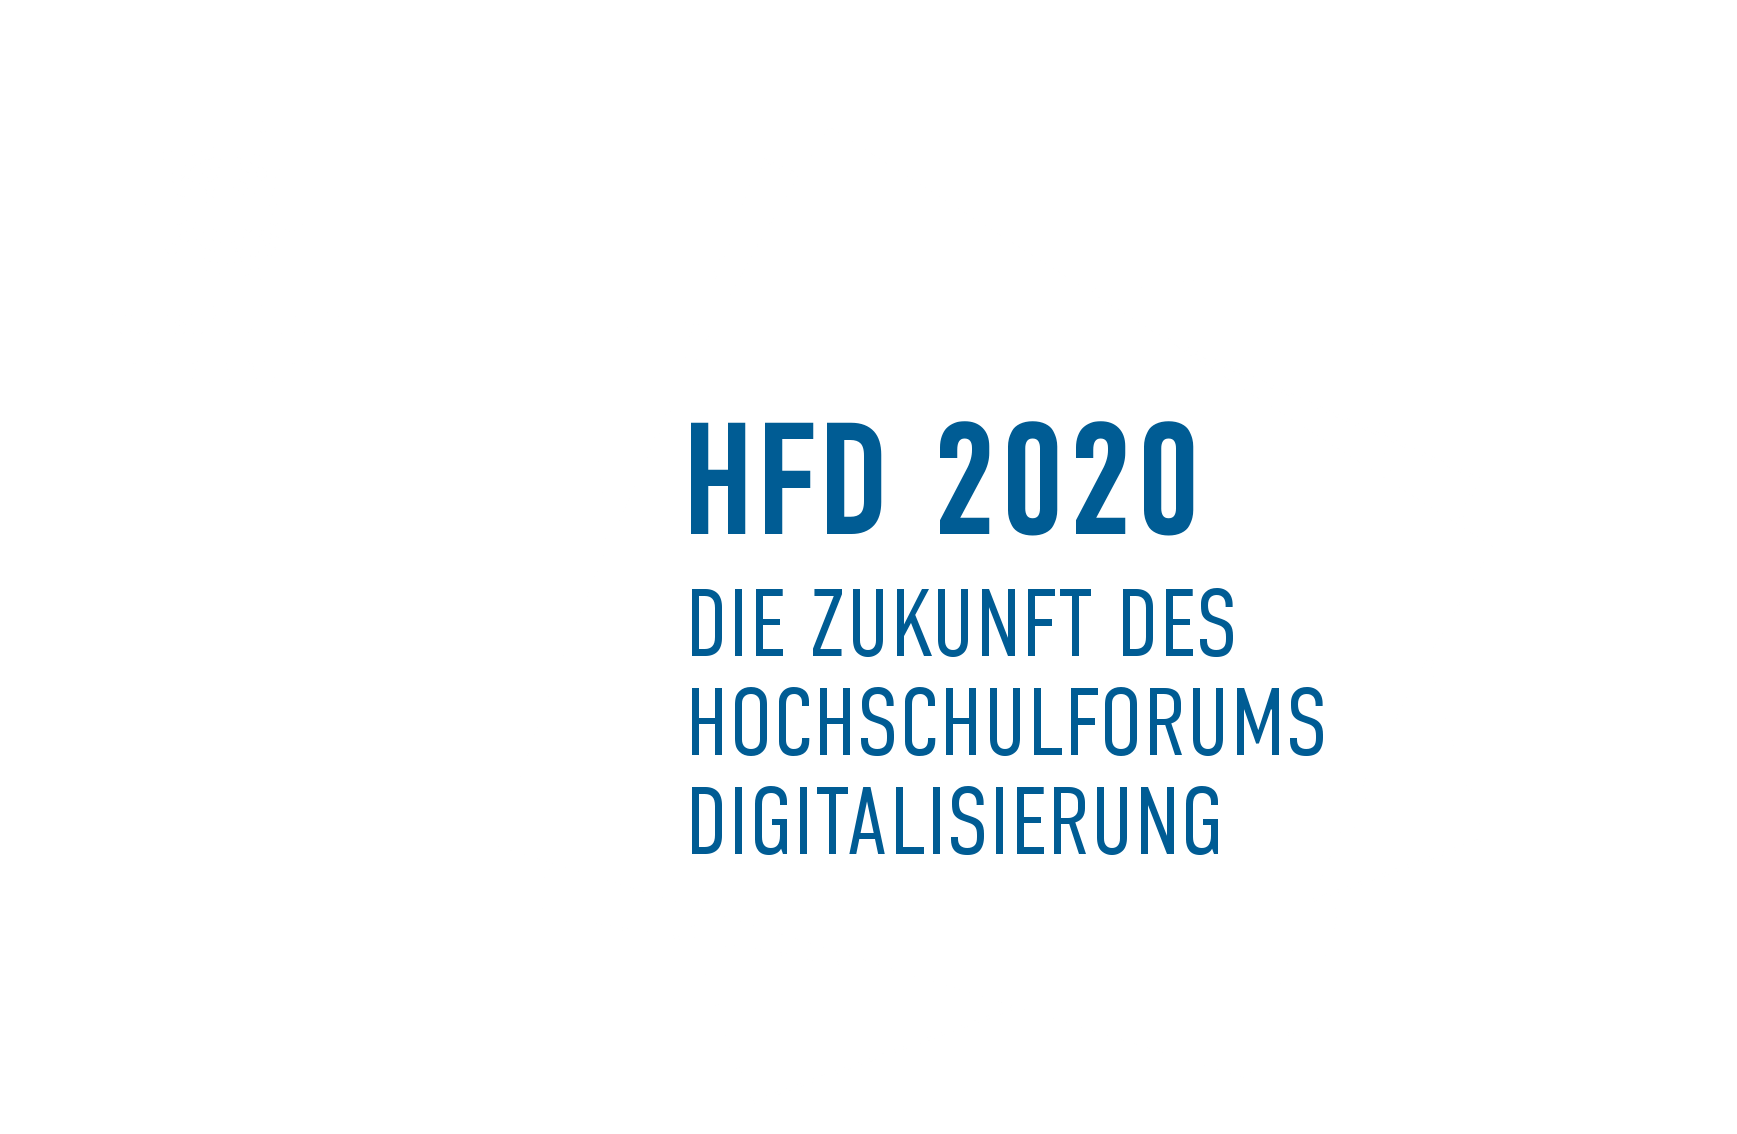 HfD 2020